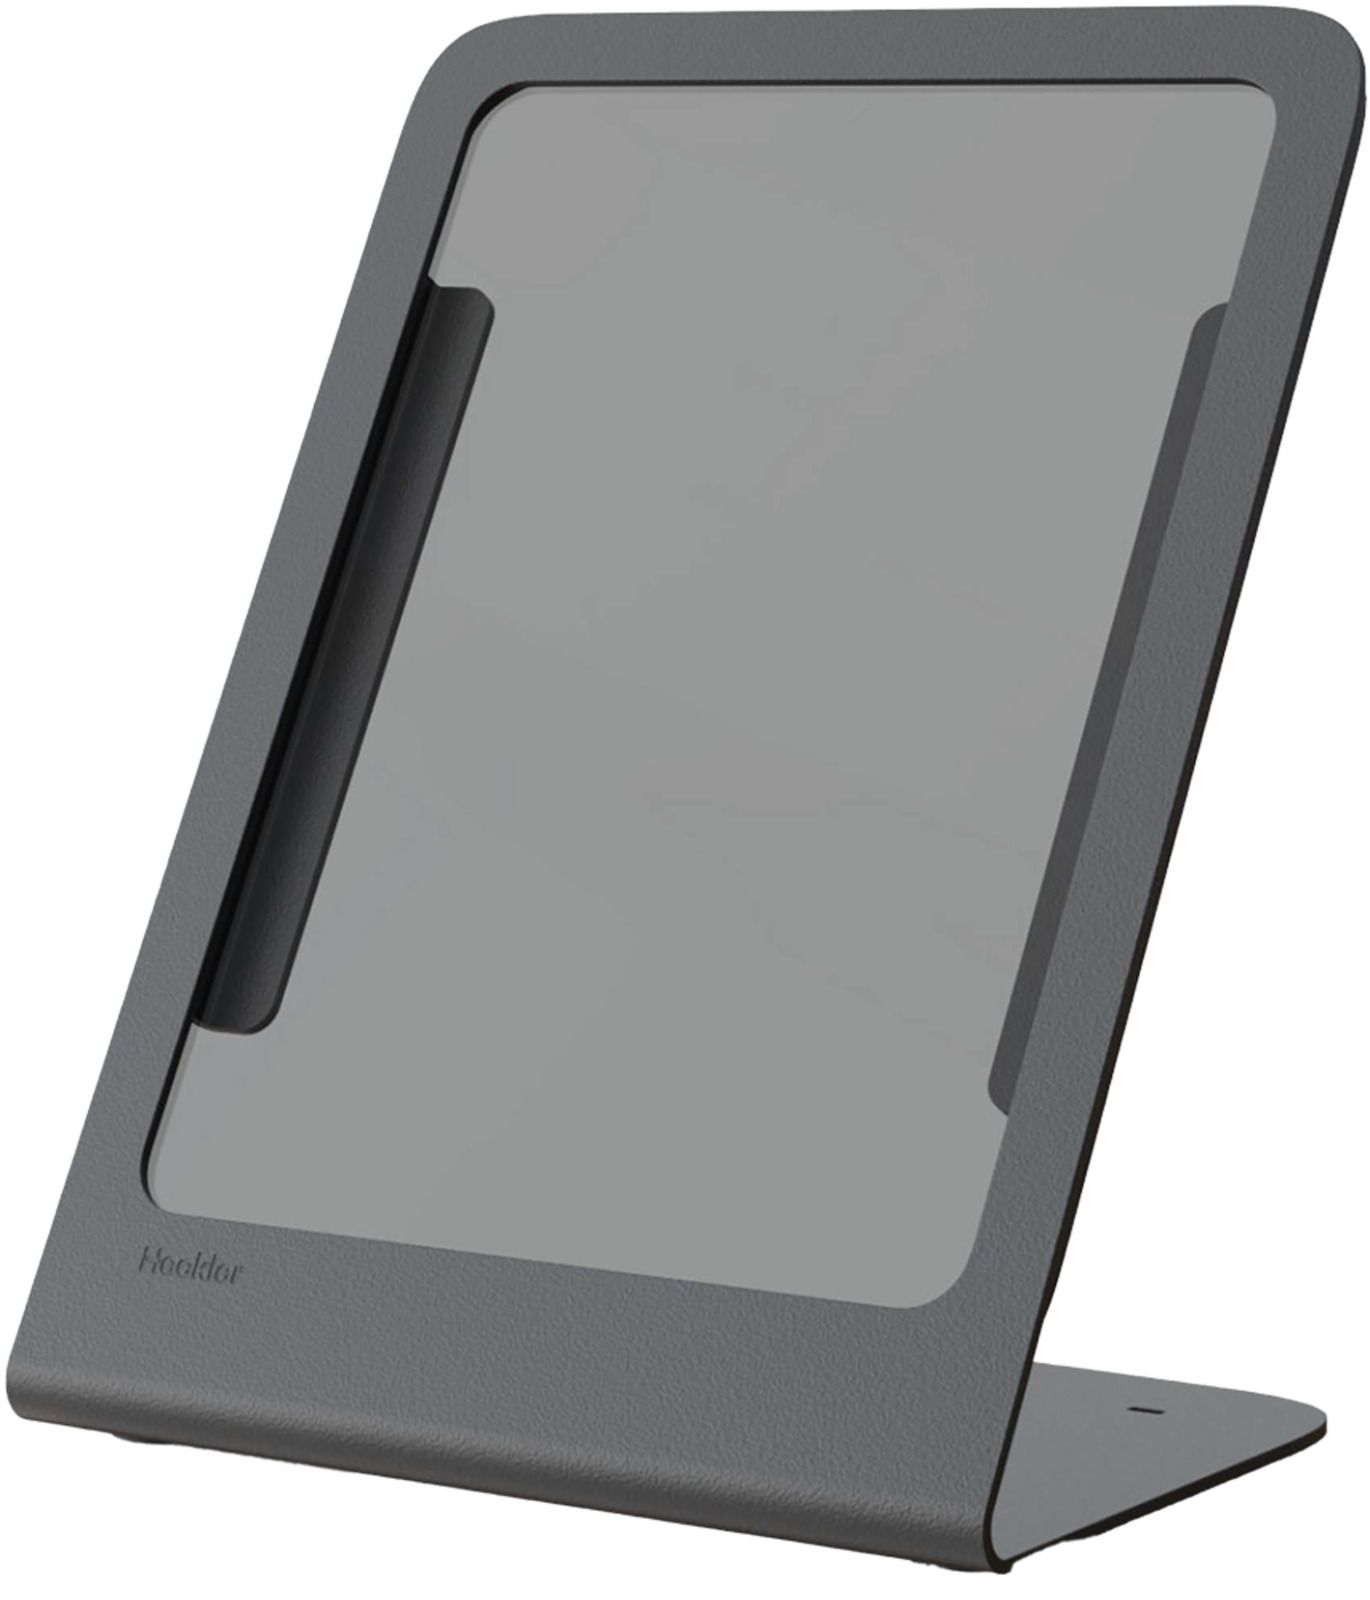 Heckler Design - H759-BG - Heckler Design Tablet PC Stand